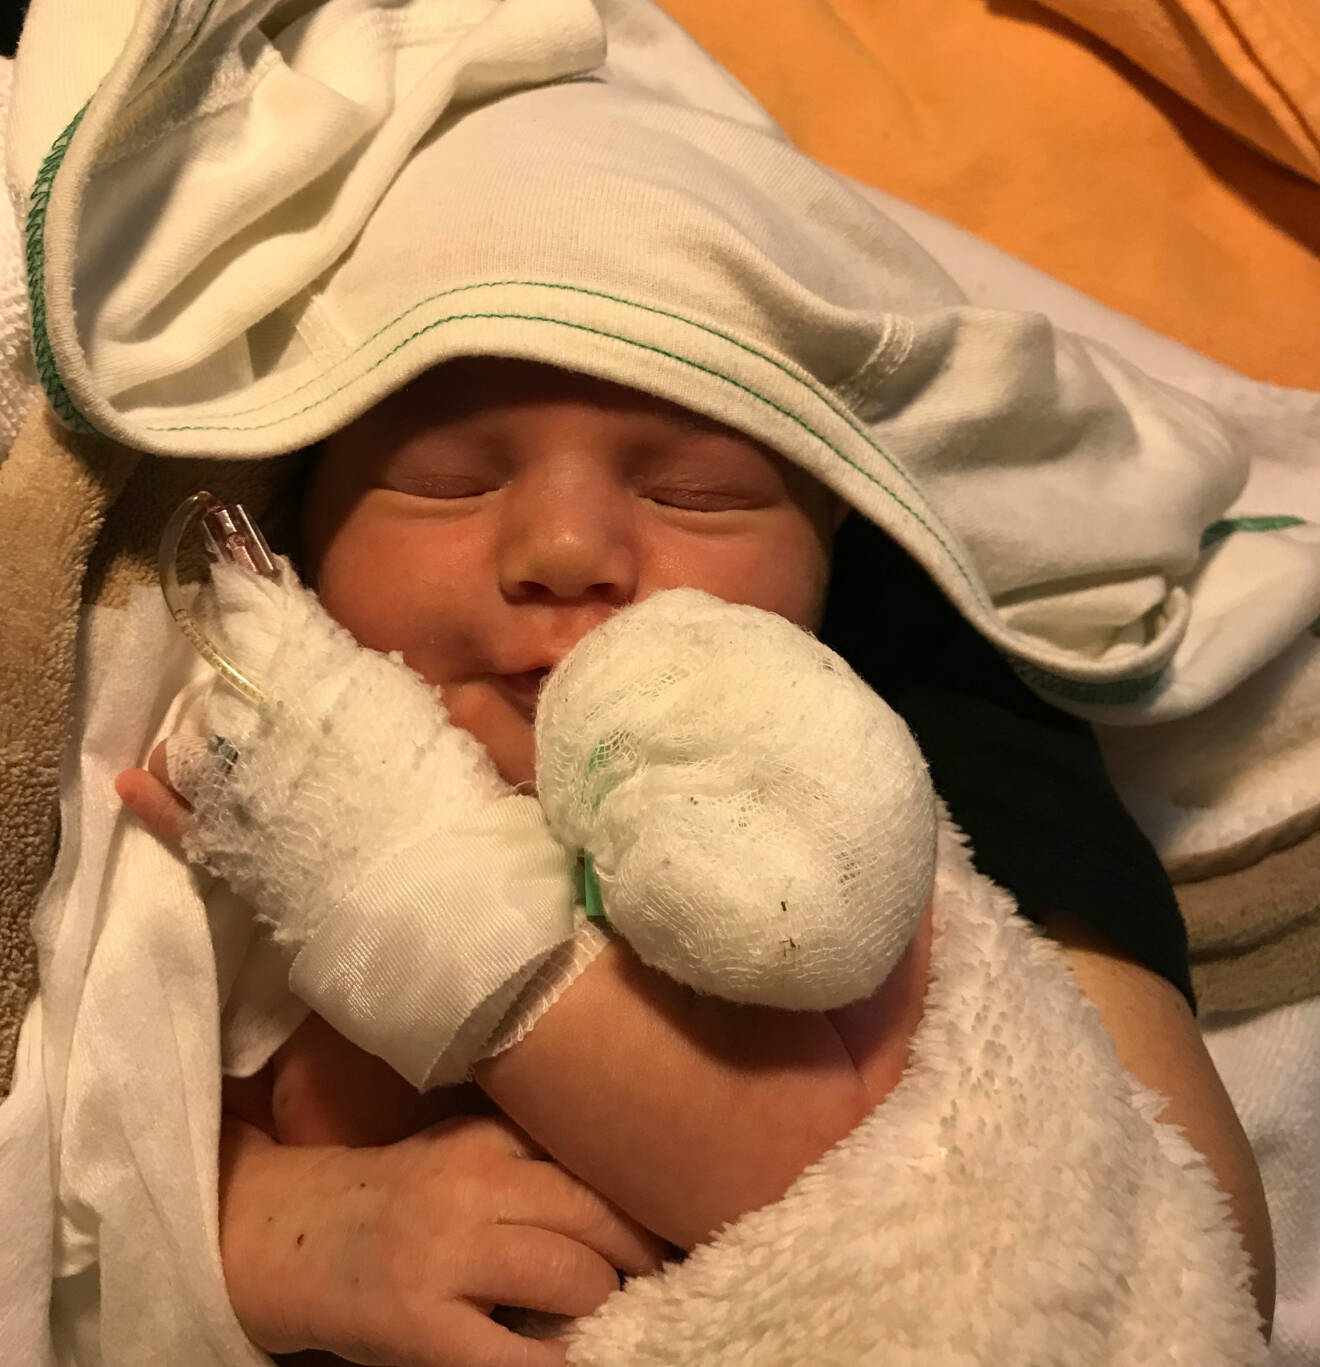 En nyfödd Theodore Andersson ligger insvept i filtar på sjukhuset med kanyl.